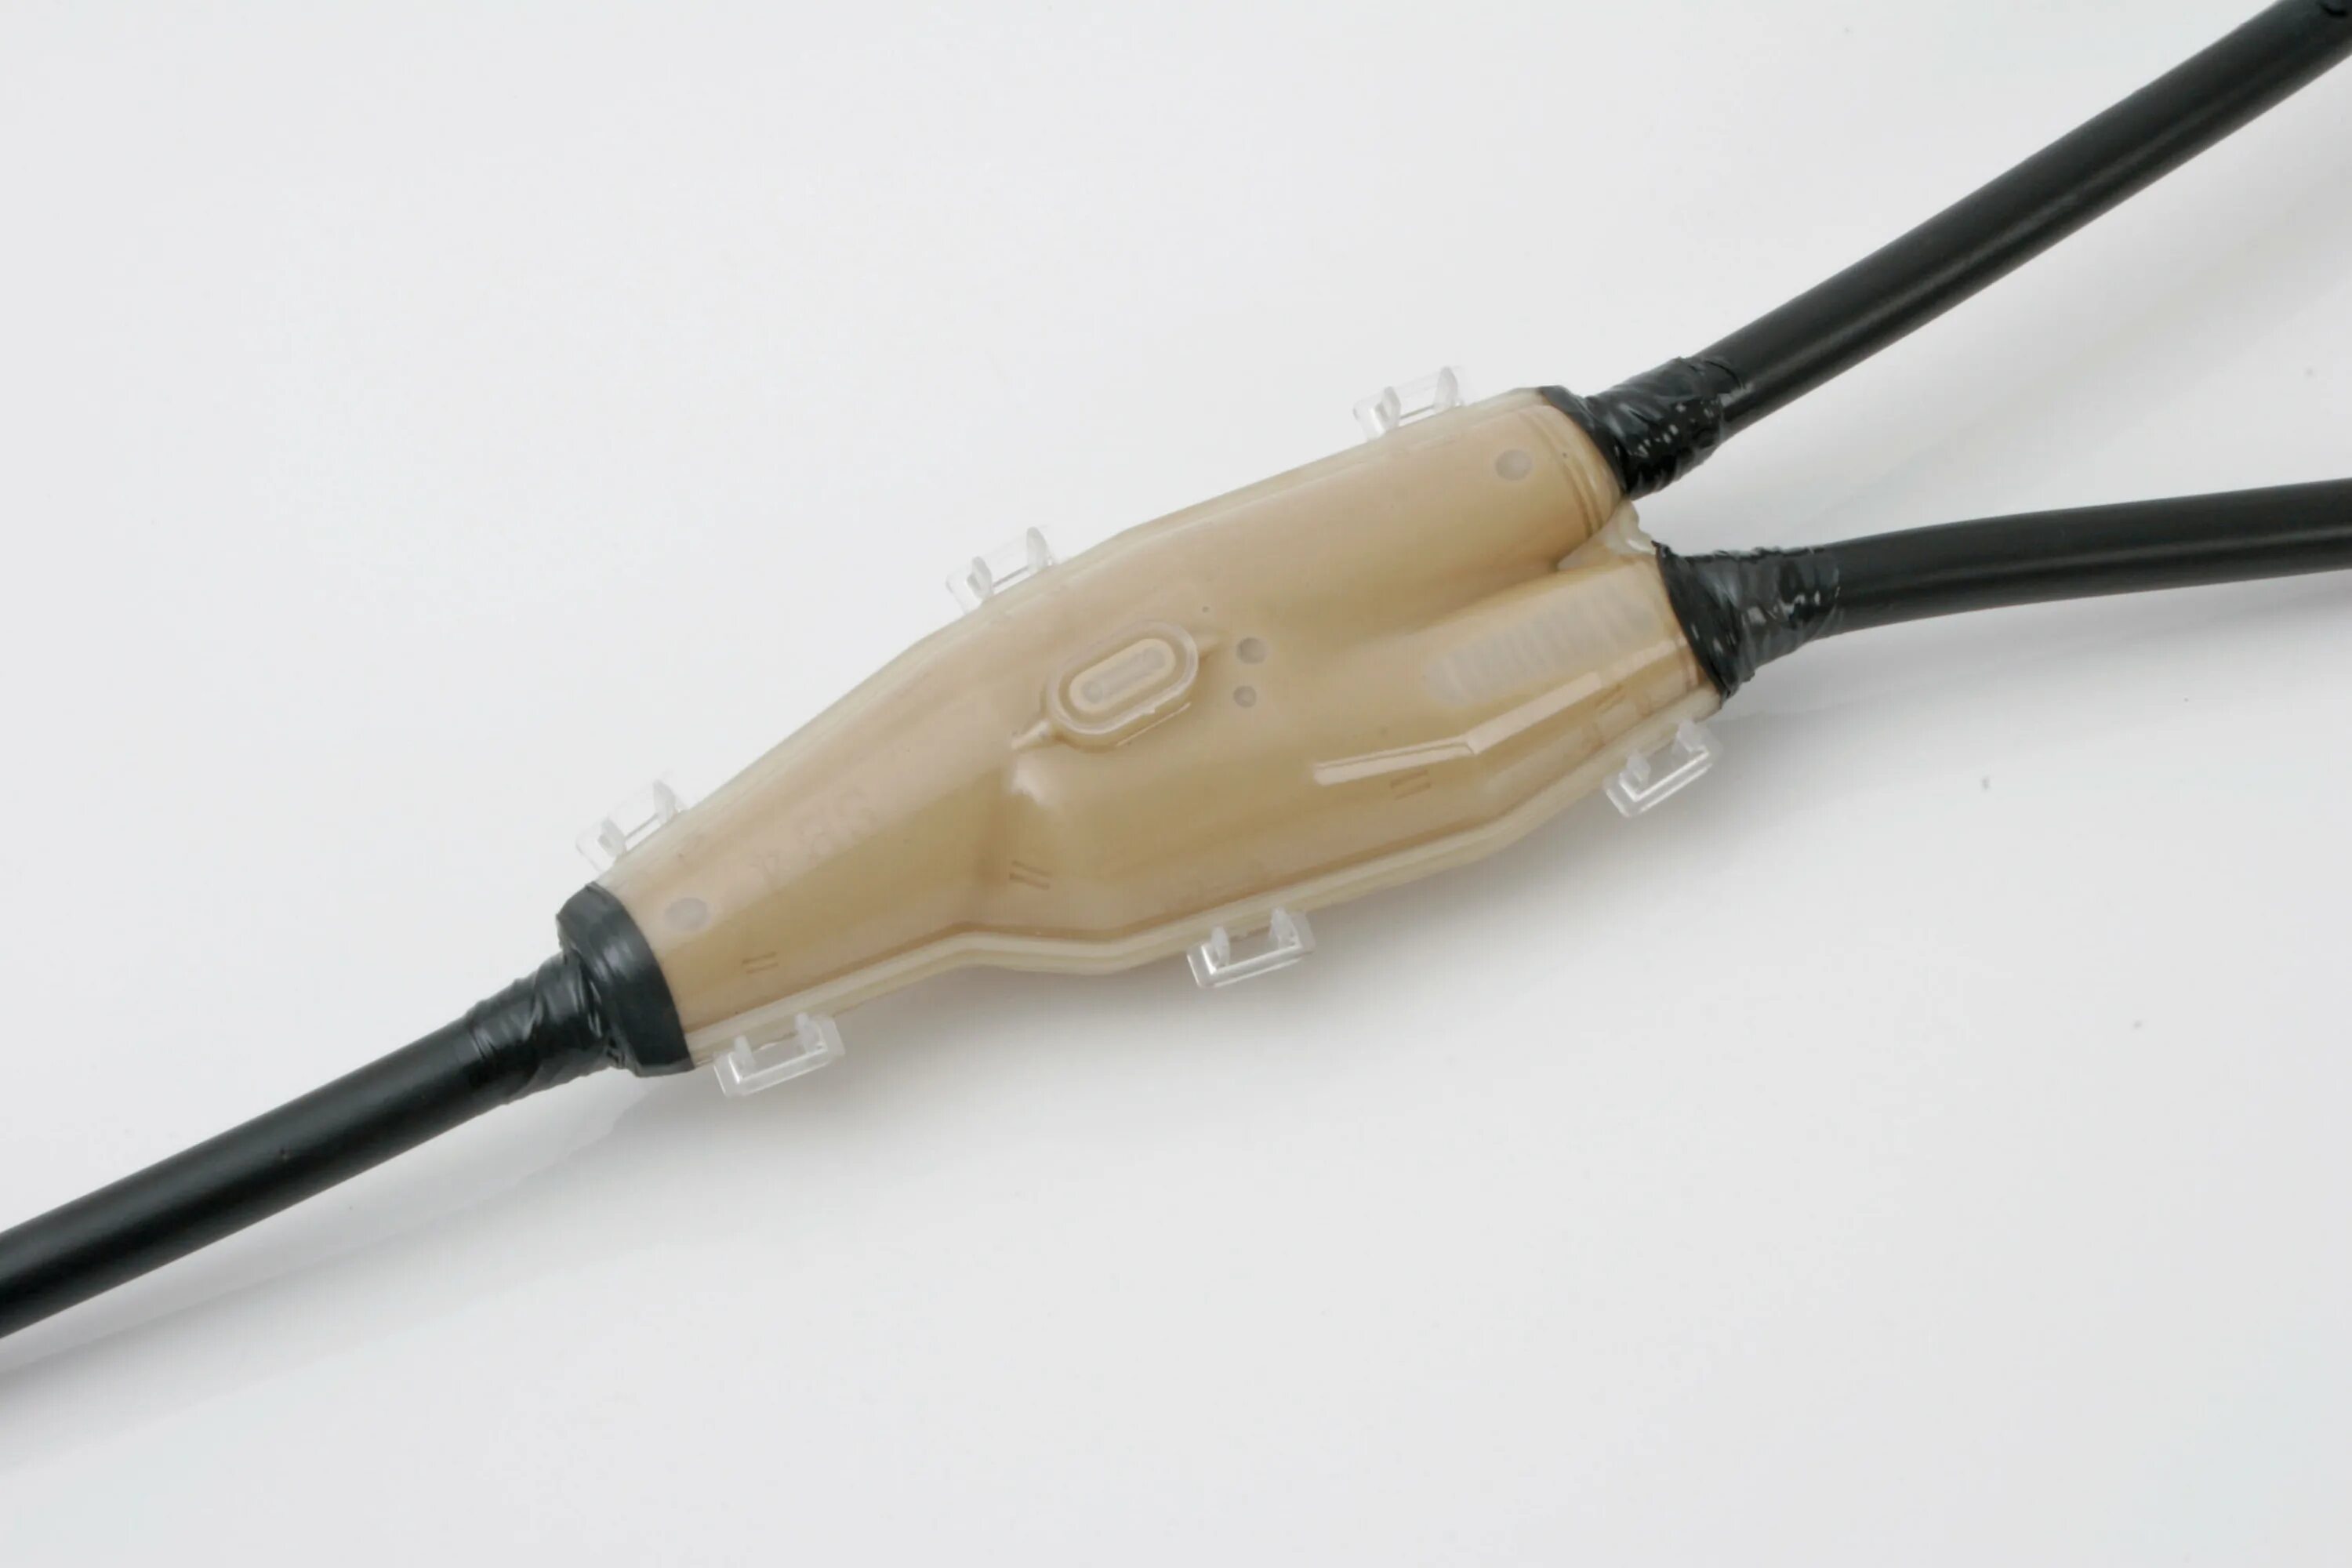 Ответвительная муфта для кабеля 4кв. Ответвительная муфта для кабеля 0.4 кв. Муфта для кабеля 0.4 кв соединительная заливная. Муфта для соединения кабеля 4х240.